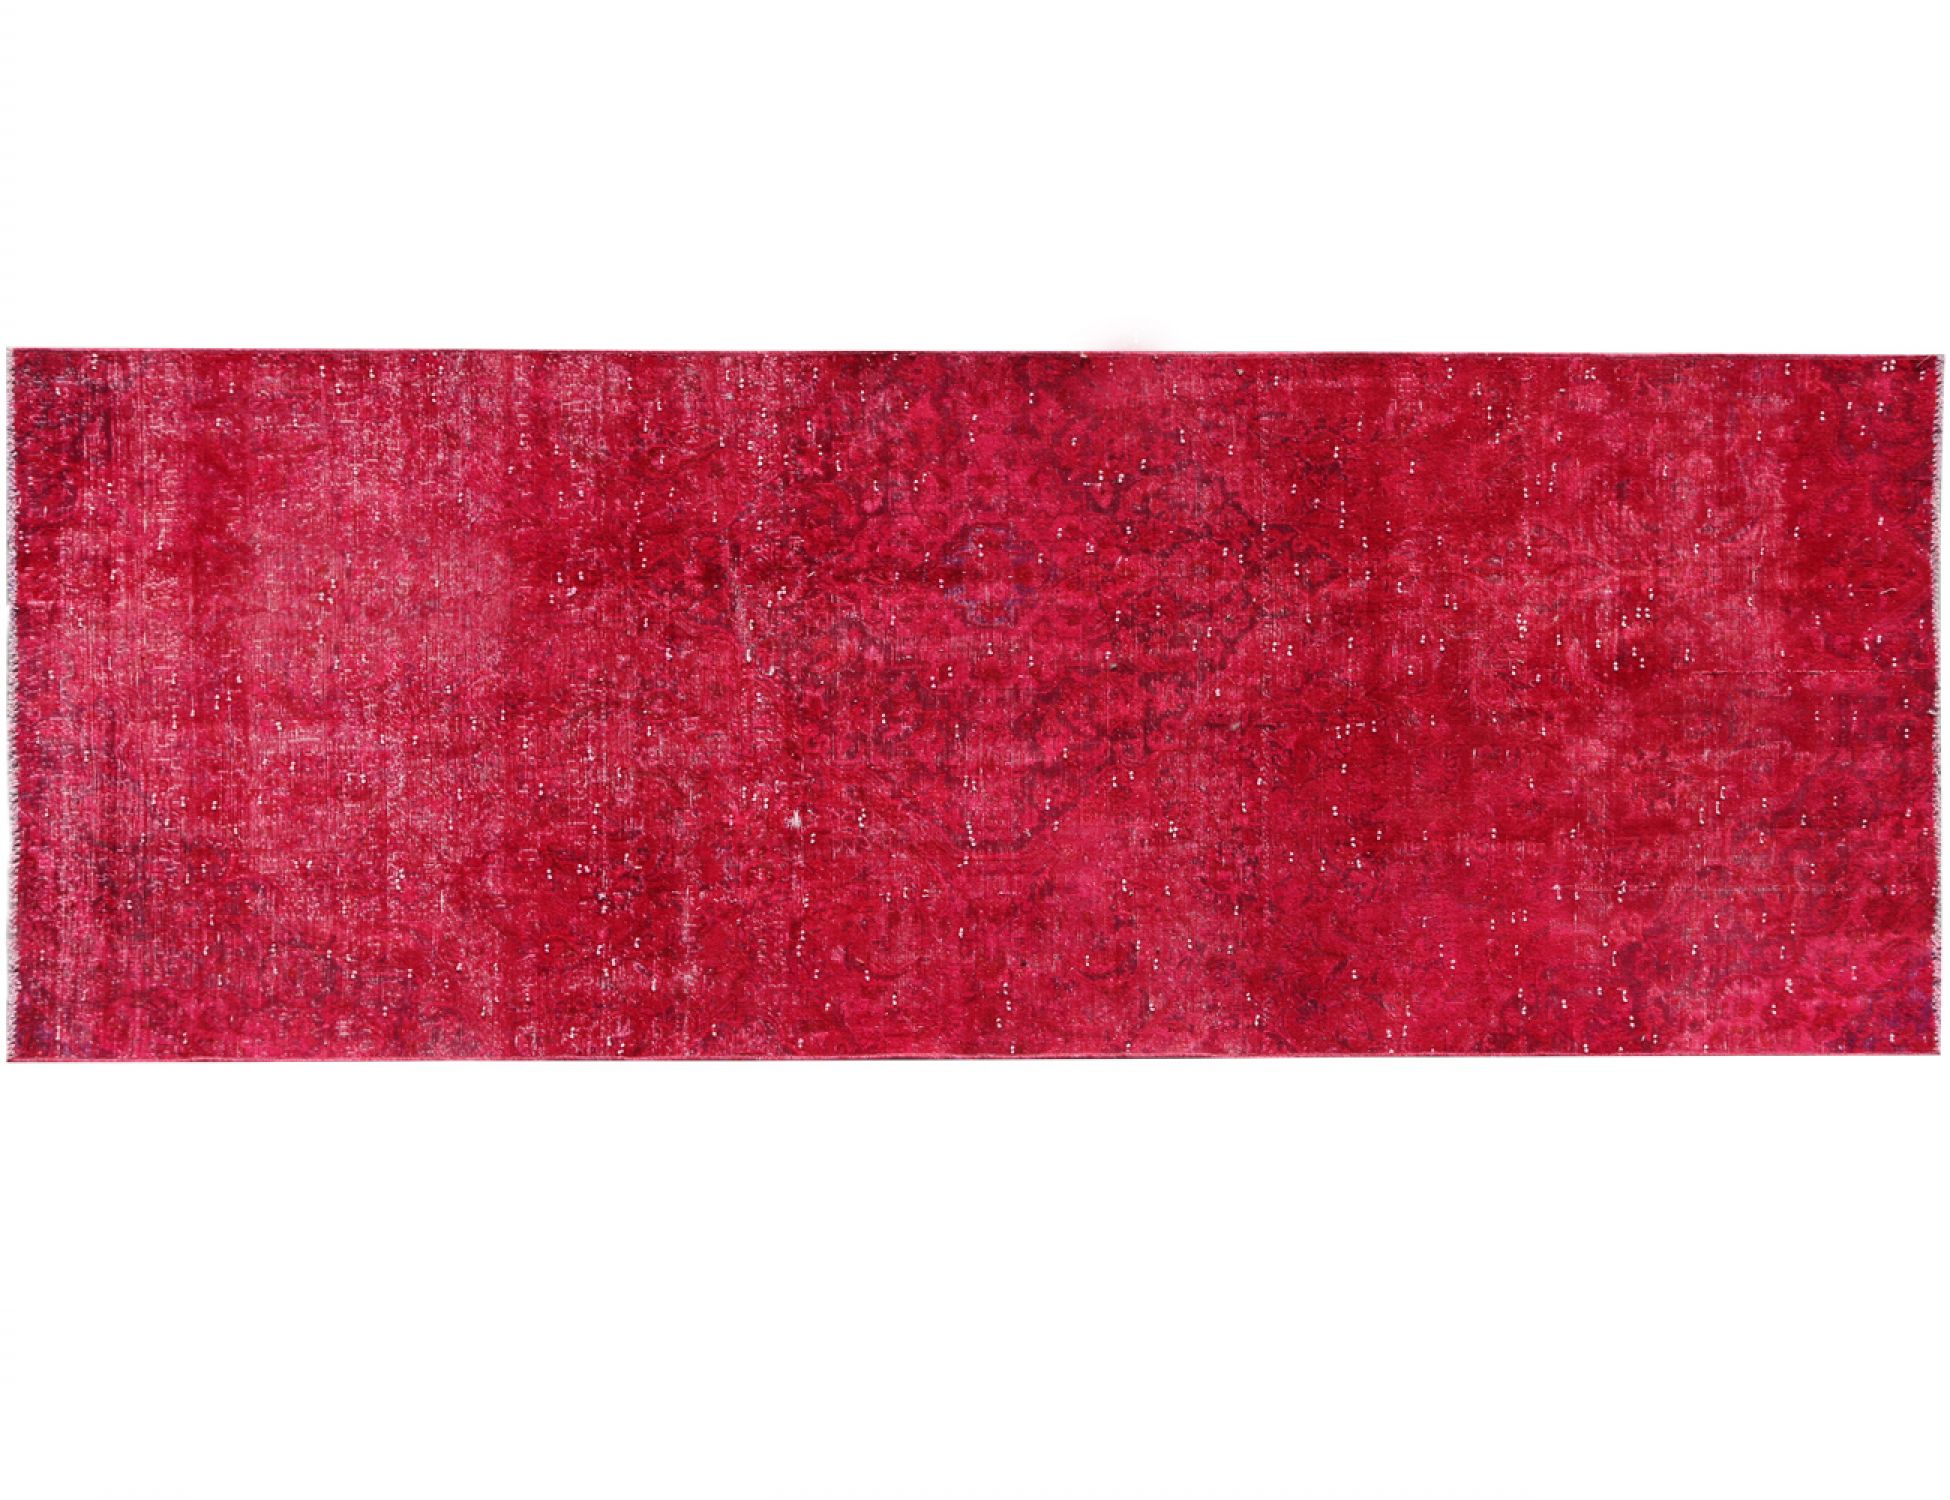 Vintage Χαλί  Κόκκινο <br/>298 x 128 cm